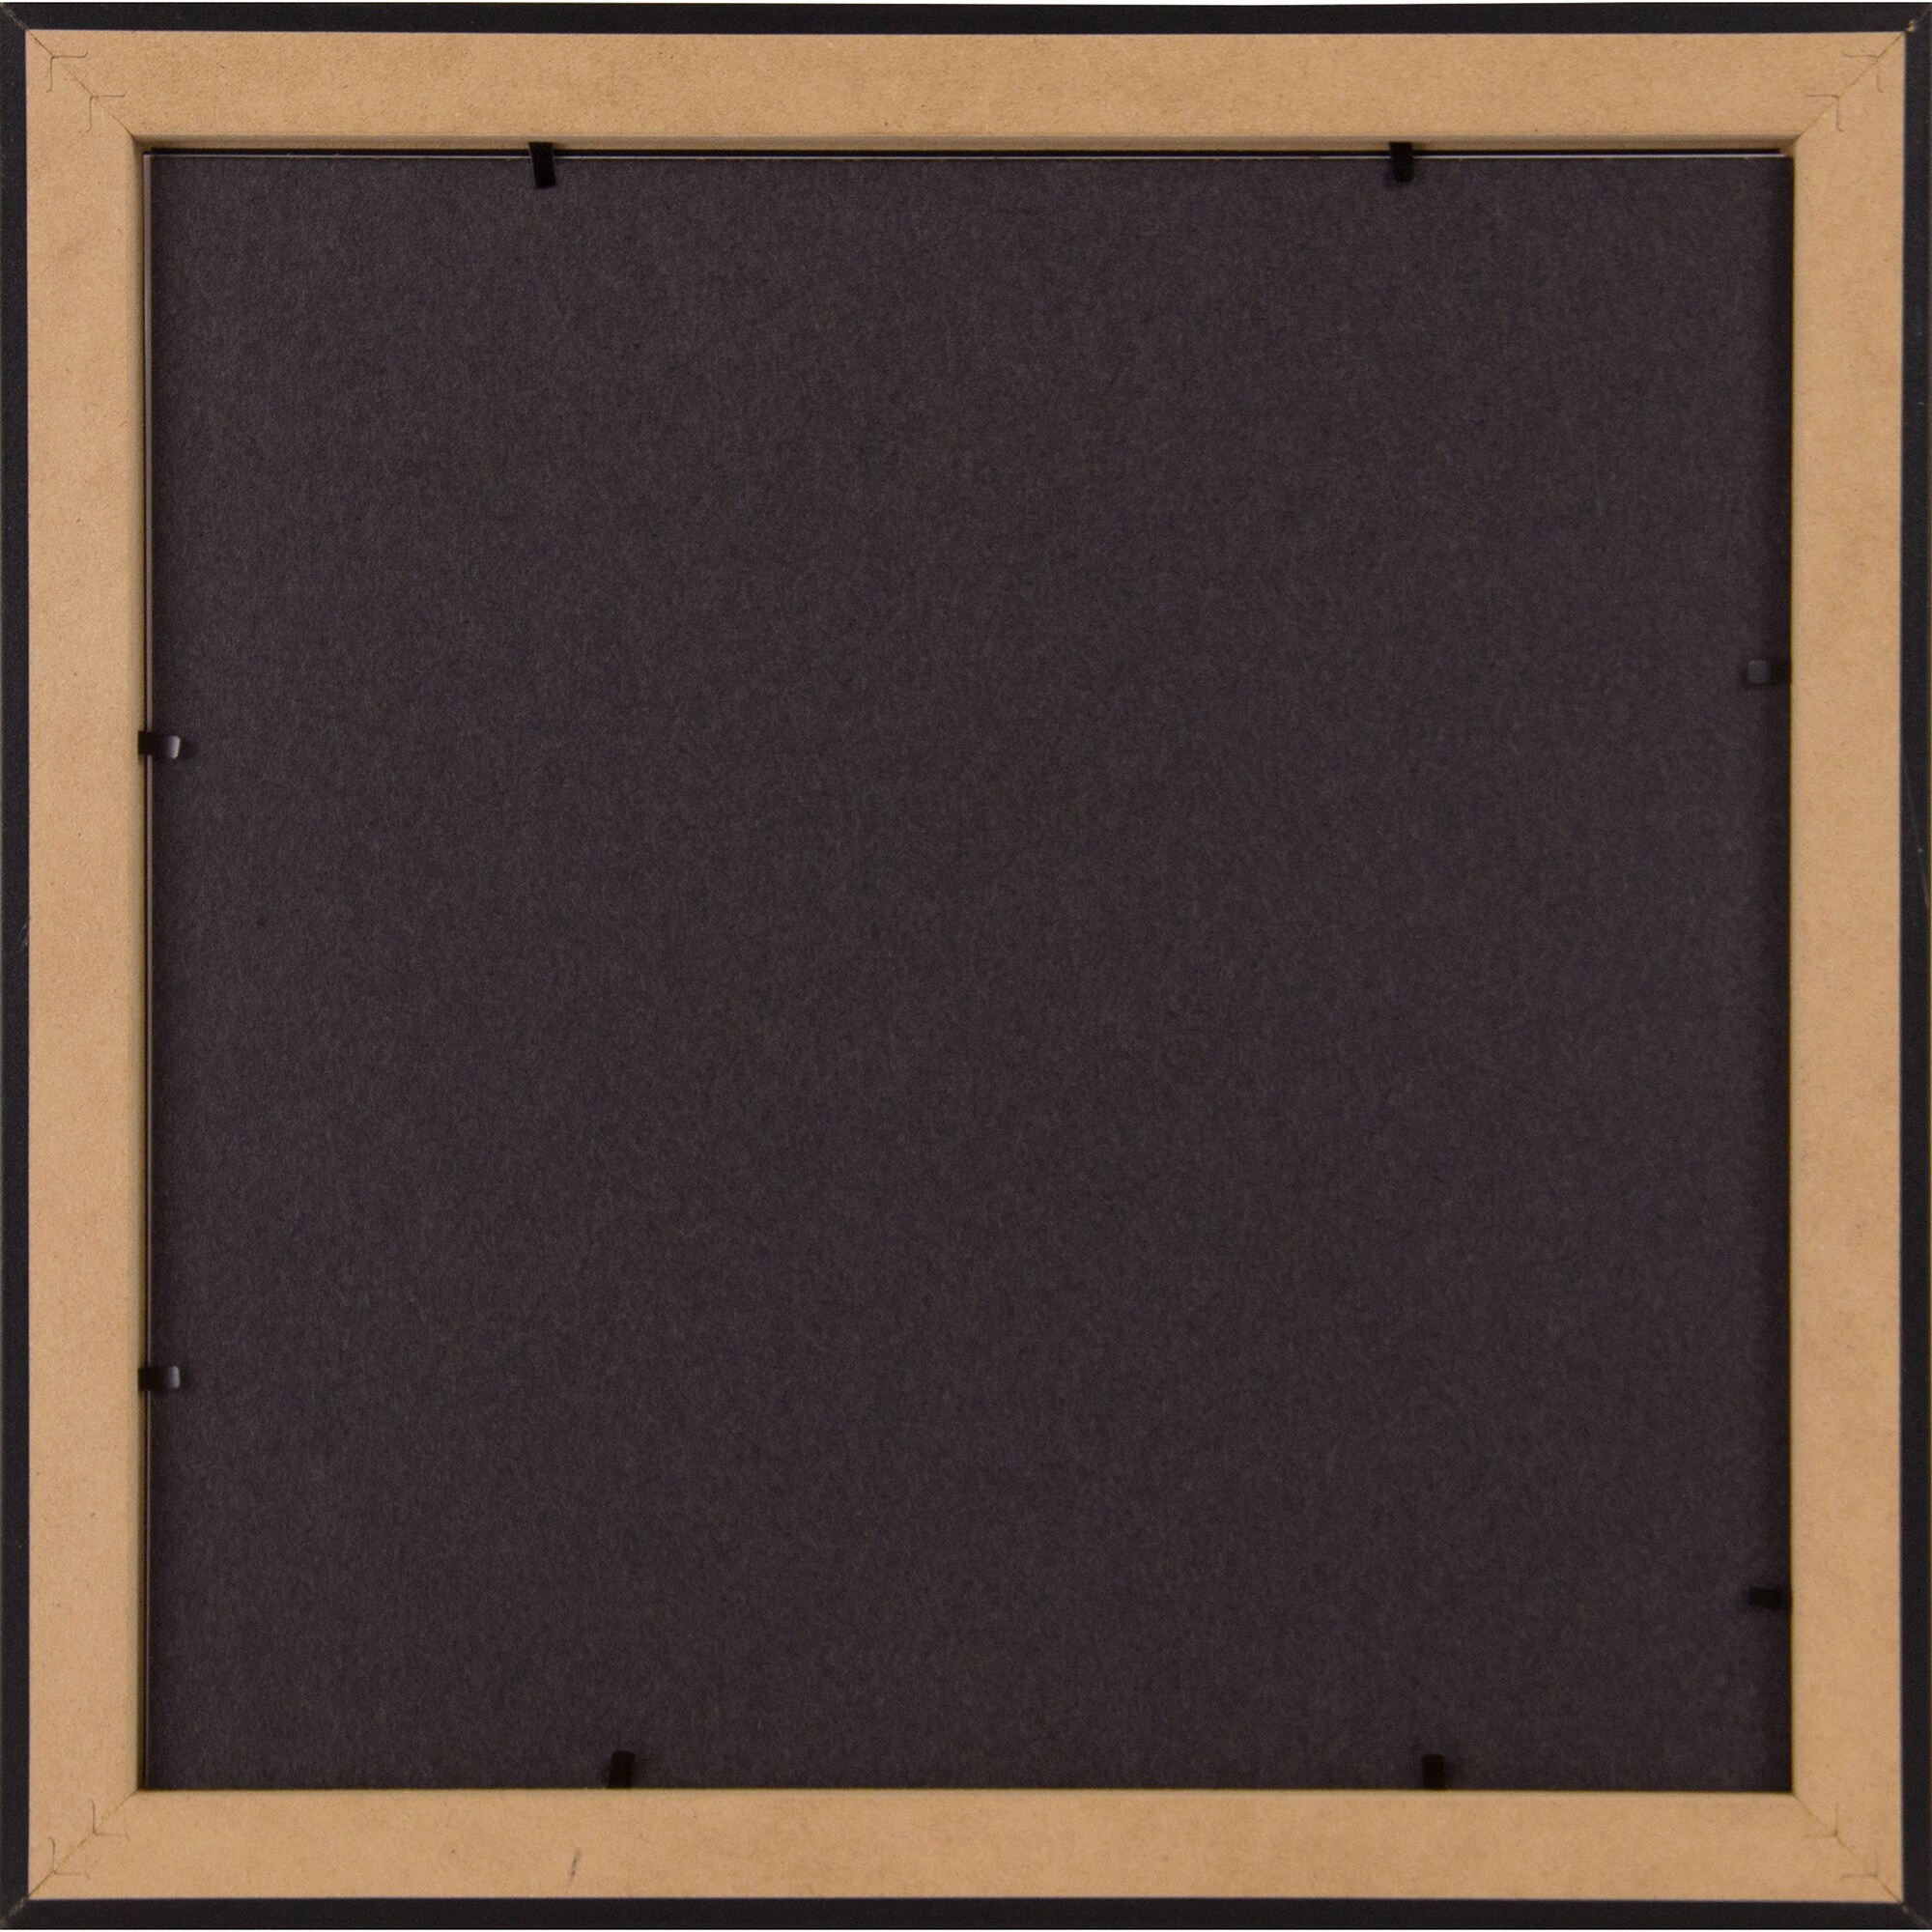 Affordable Black Frame (12" x 12")